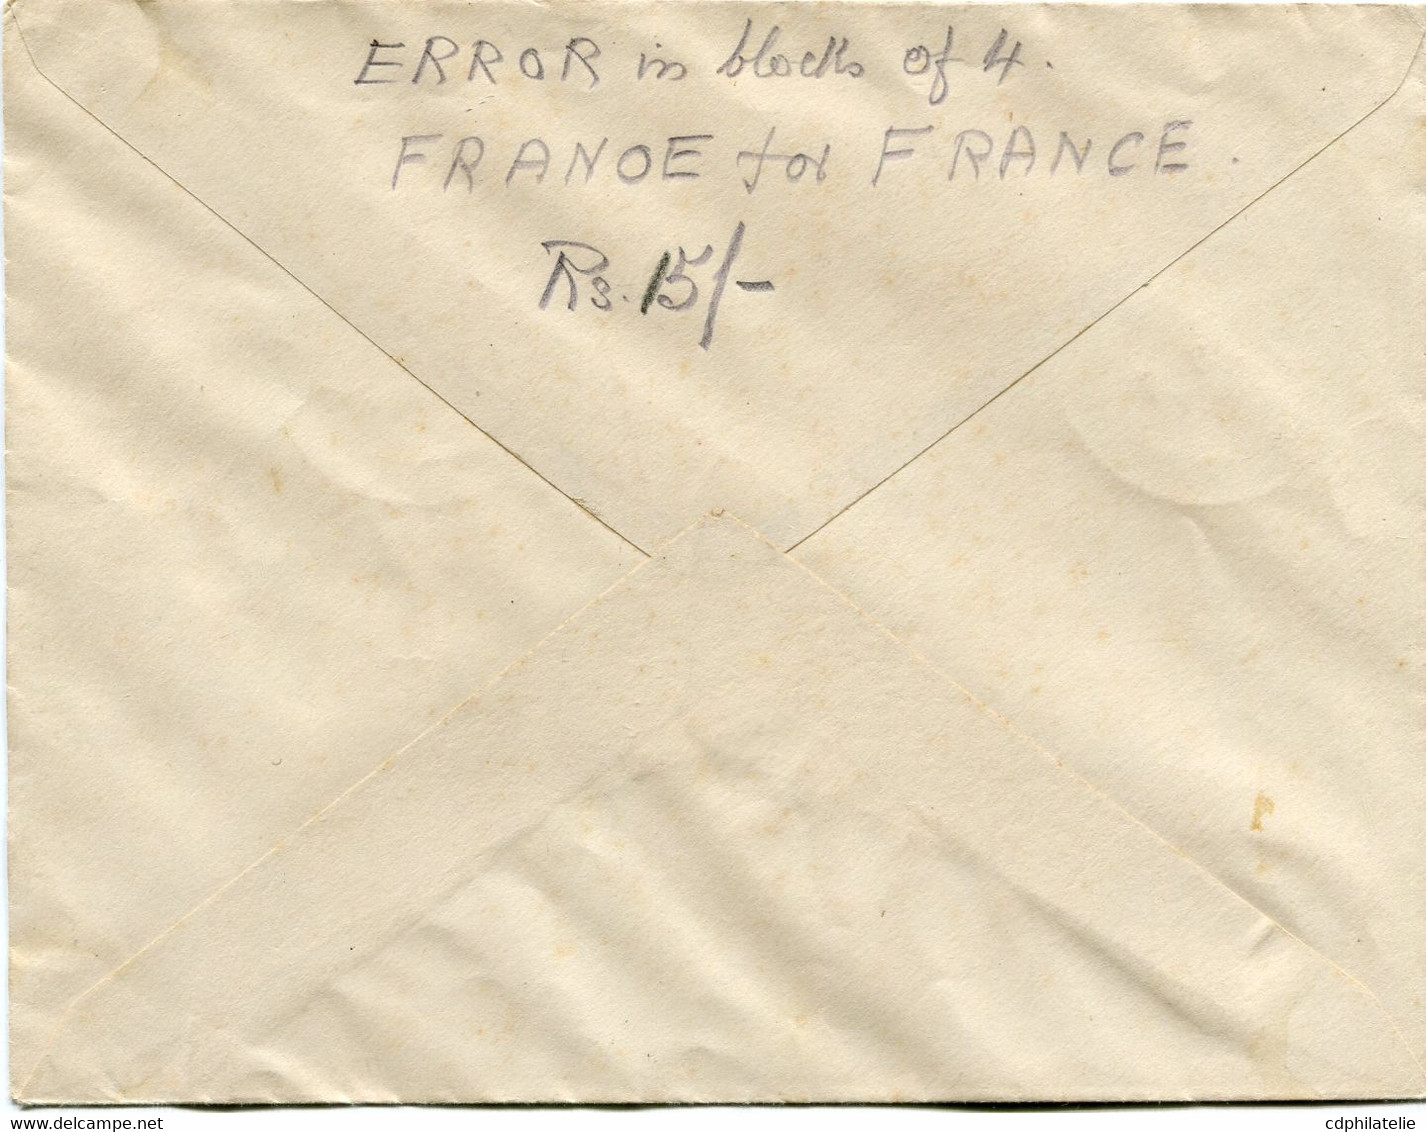 INDE FRANCAISE FRANCE LIBRE LETTRE AFFRANCHIE AVEC UN BLOC DE 4 AVEC VARIETE "FRANOE" DEPART INDE...5-8-1944 PONDICHERY - Lettres & Documents